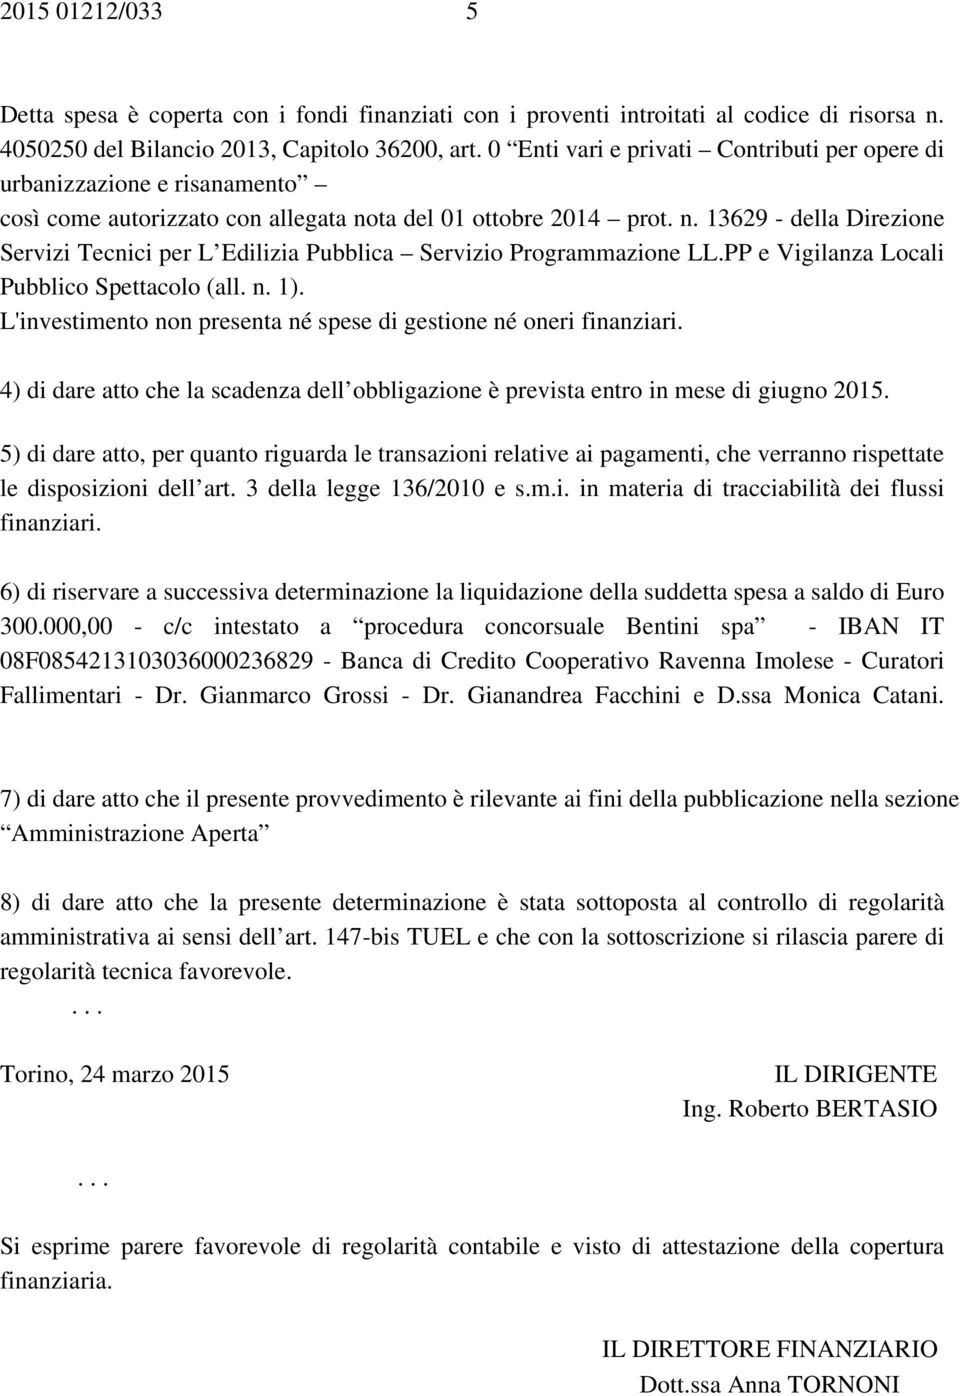 ta del 01 ottobre 2014 prot. n. 13629 - della Direzione Servizi Tecnici per L Edilizia Pubblica Servizio Programmazione LL.PP e Vigilanza Locali Pubblico Spettacolo (all. n. 1).